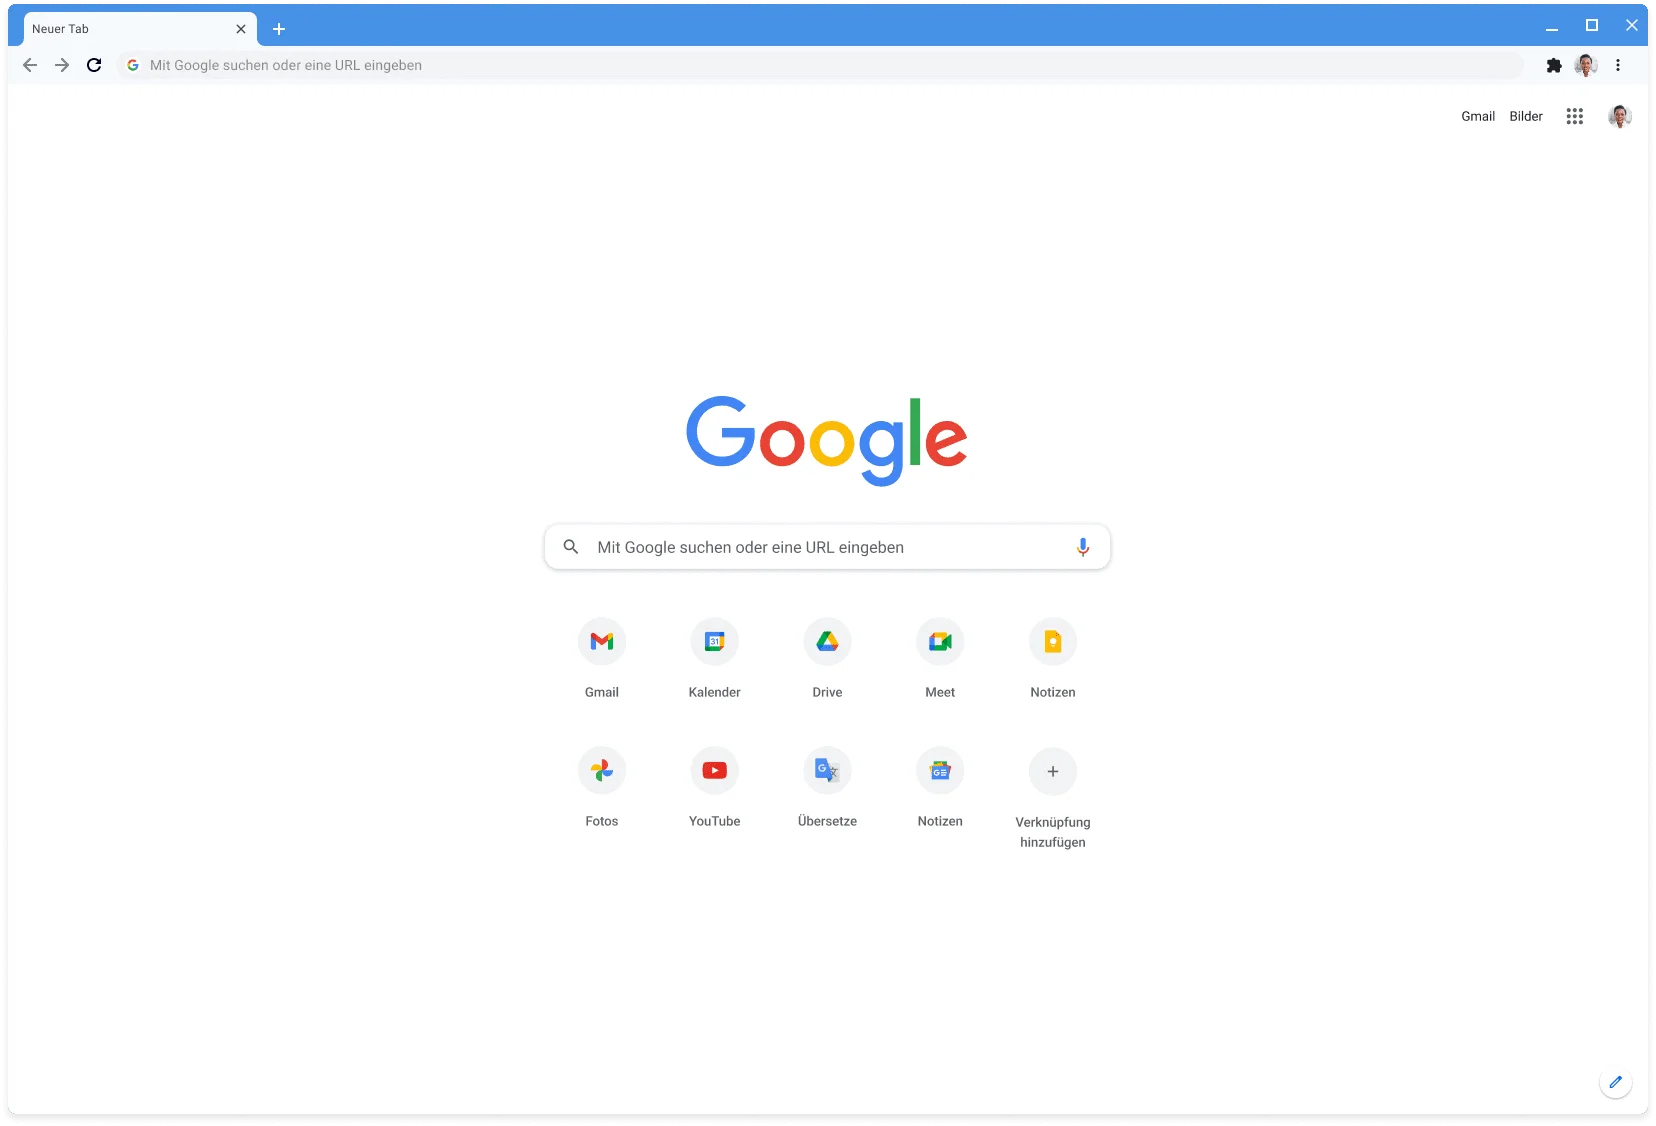 Chrome-Browserfenster mit Google.com, im klassischen Design.